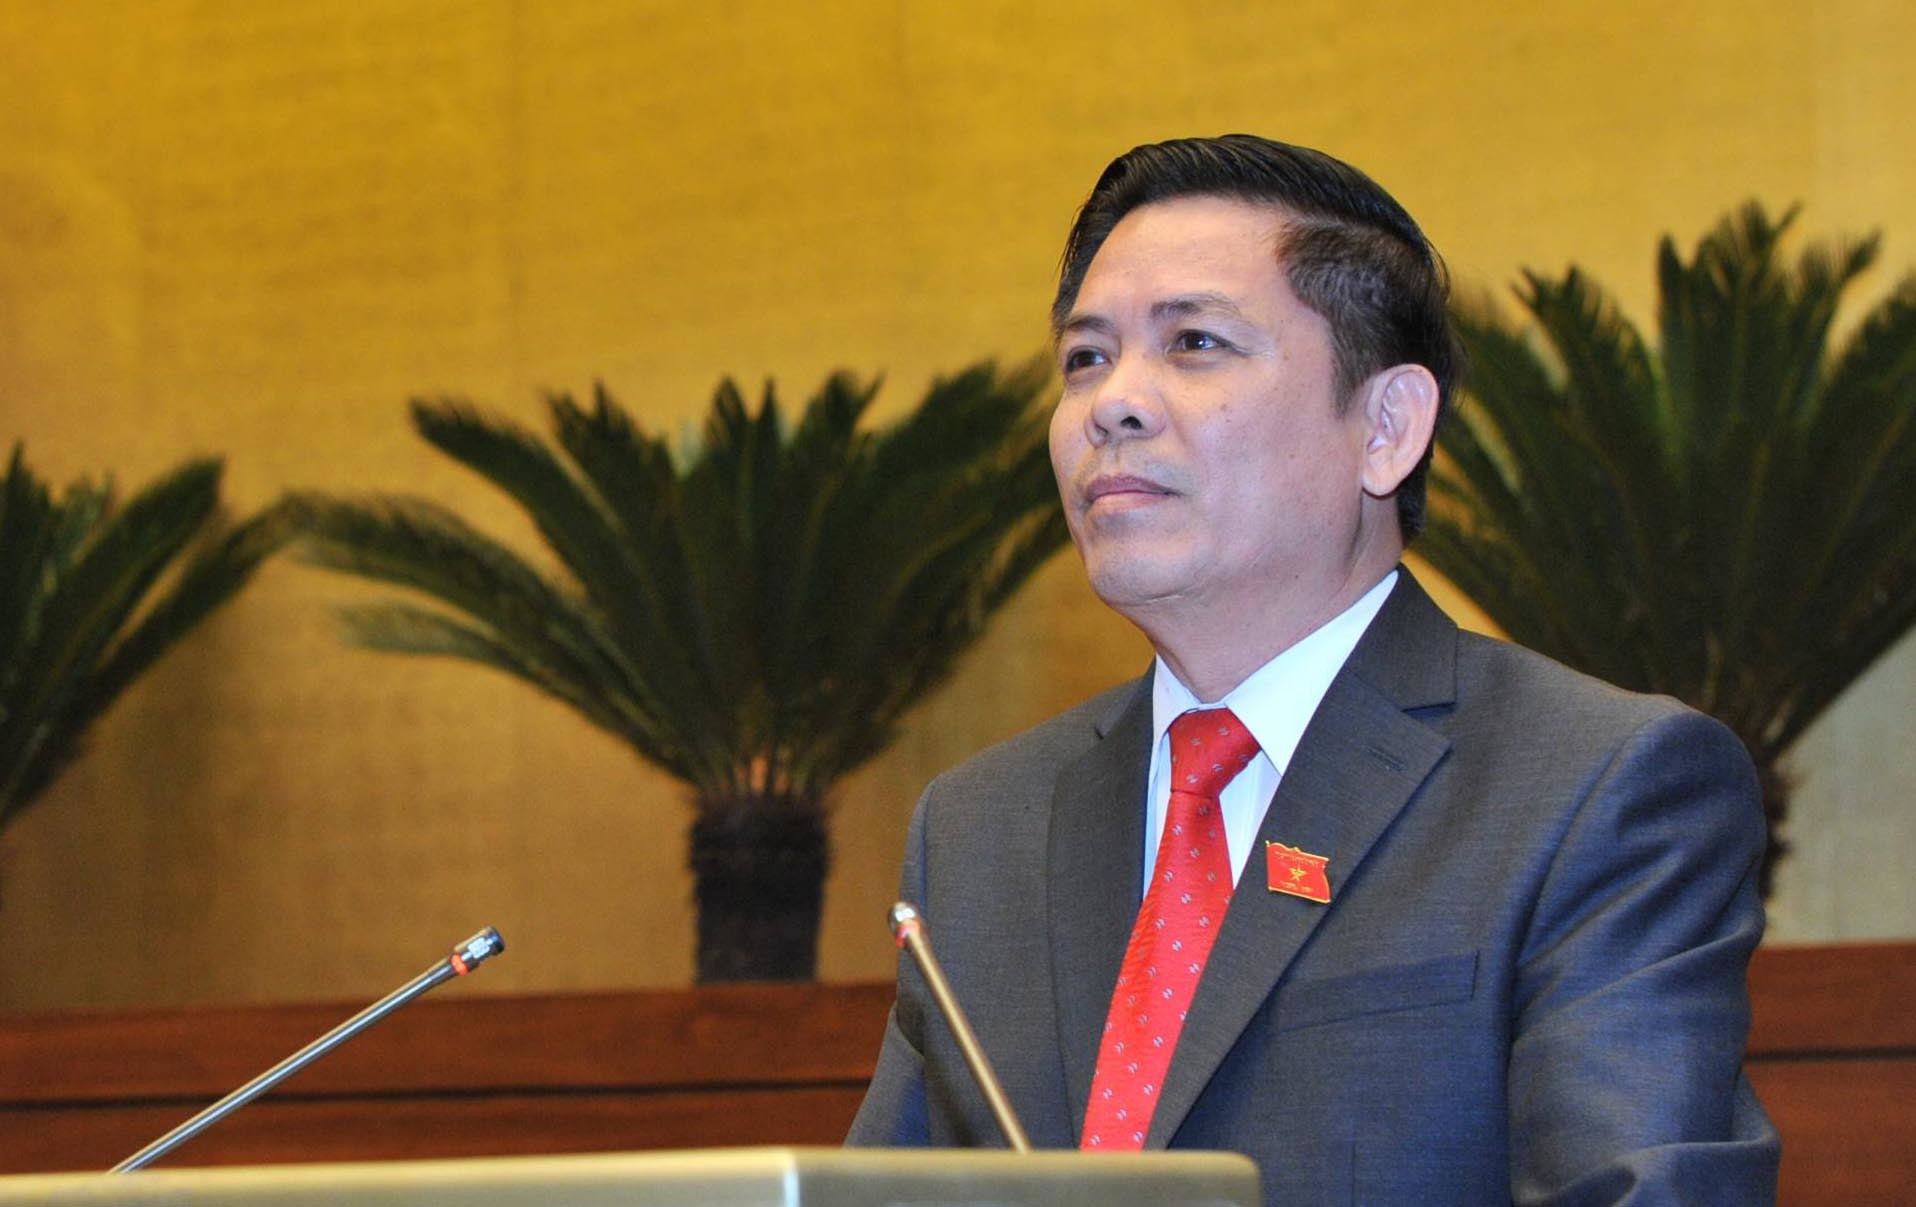 Bộ trưởng Nguyễn Văn Thể đăng đàn làm rõ thu phí - thu giá